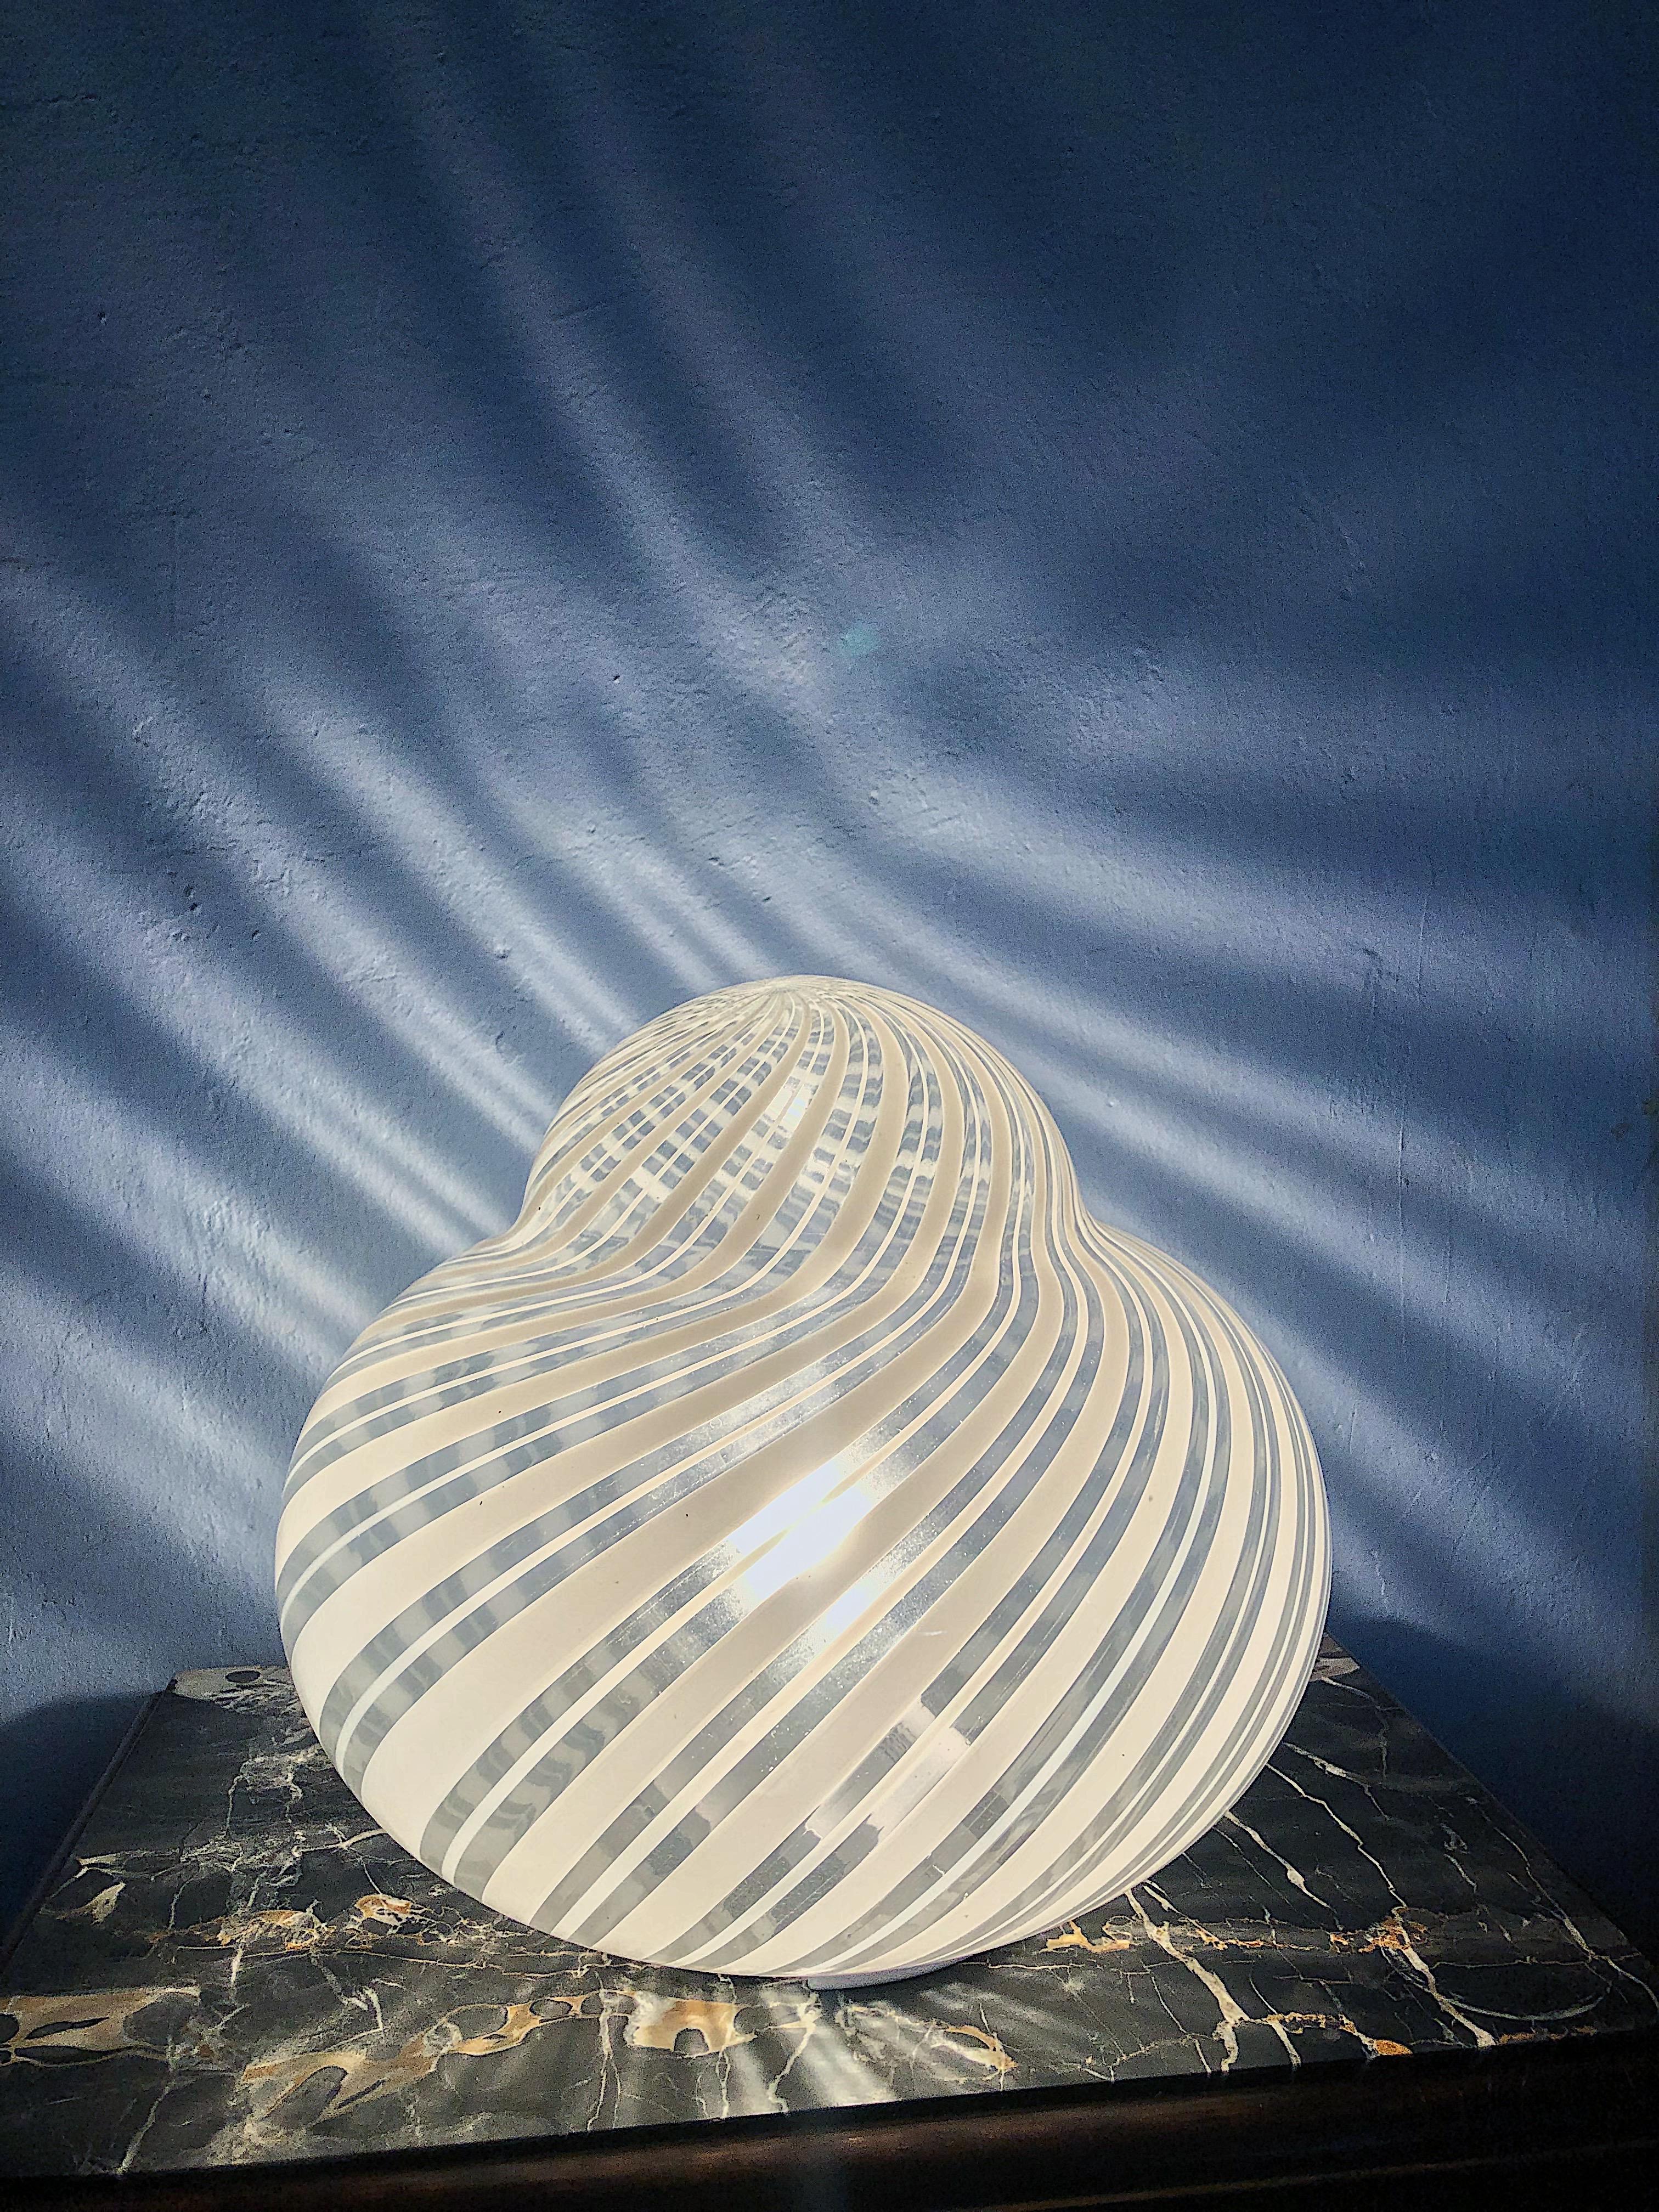 Große Lampe aus weißem Murano-Glas mit Wirbel. Geeignet für den Tisch oder als Bodenleuchte.
Schöpfer: F.FABBIAN Murano

Abmessungen: Höhe: 30 cm Durchmesser: 33 cm
MATERIALIEN und TECHNIKEN: Metall, Glas
Herkunftsort: Italien
Zeitraum: